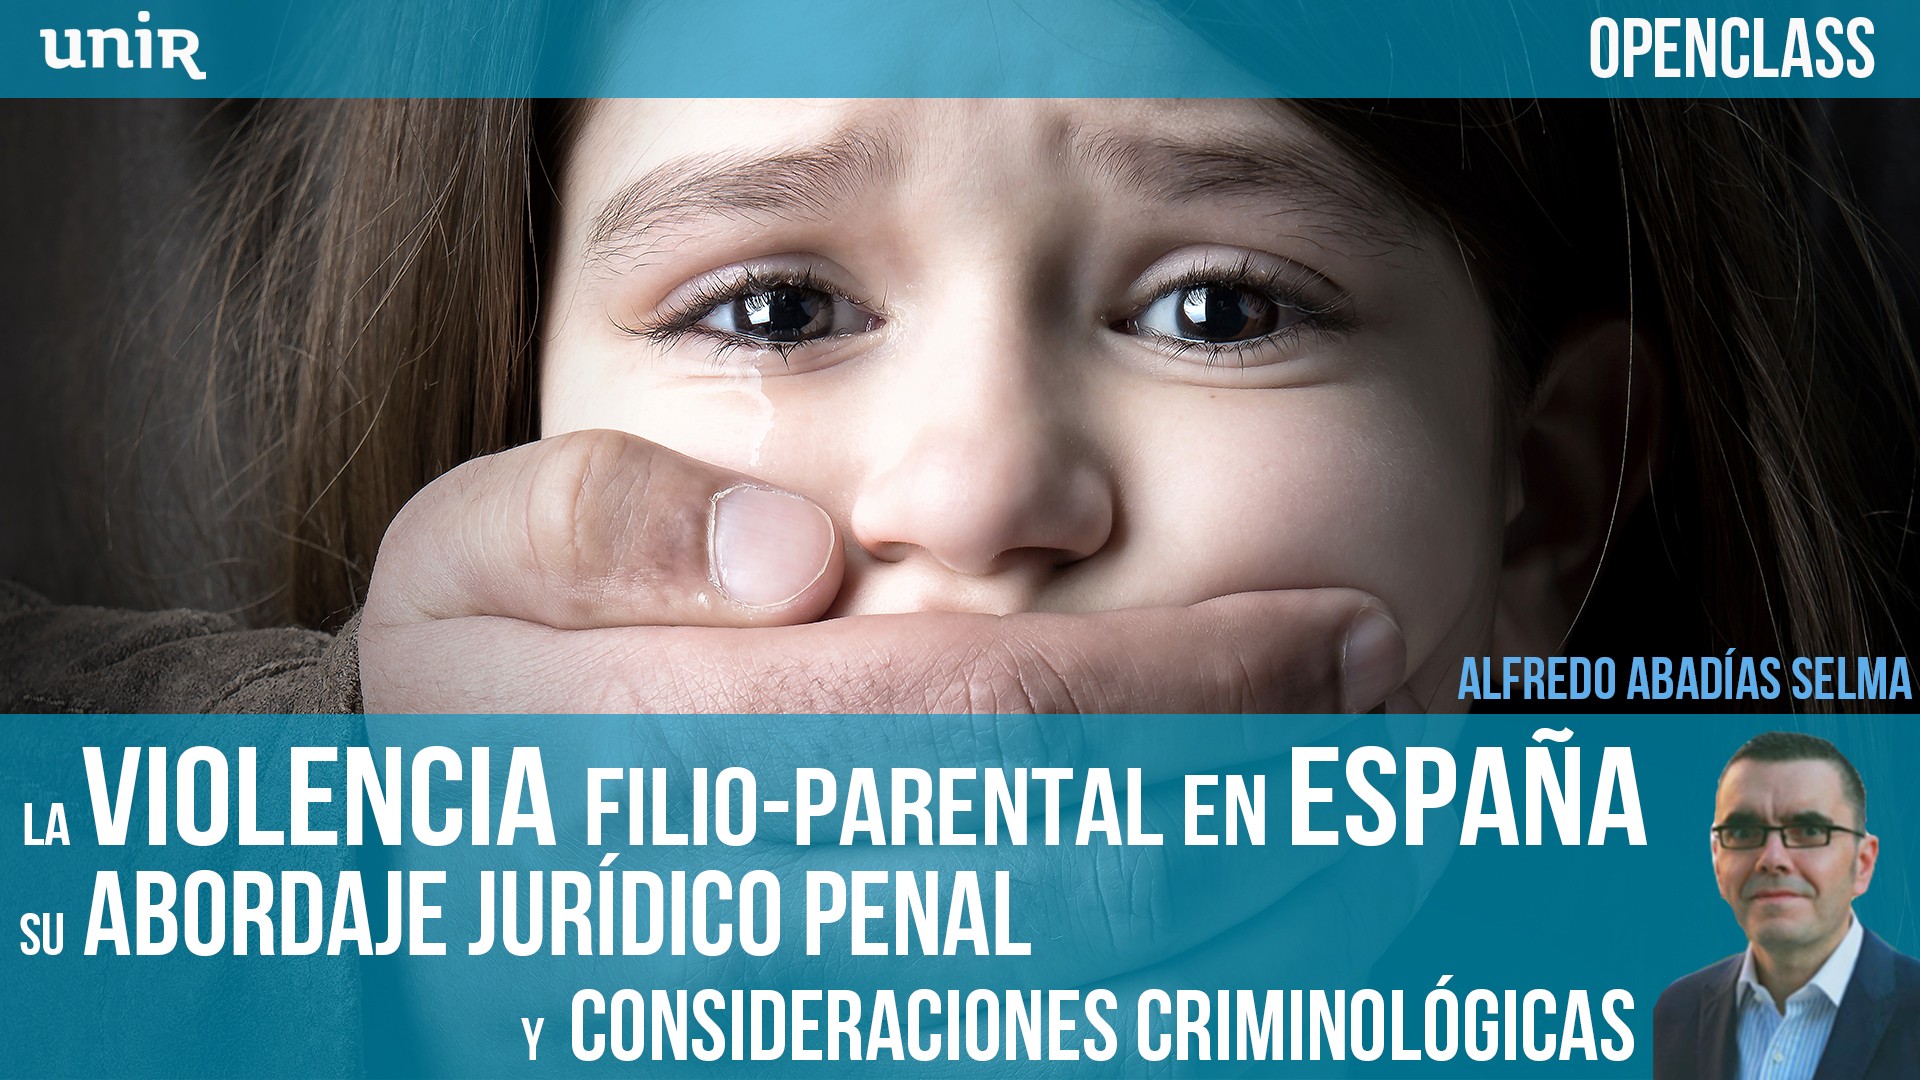  La violencia filio-parental en España. Su abordaje jurídico penal y consideraciones criminológicas